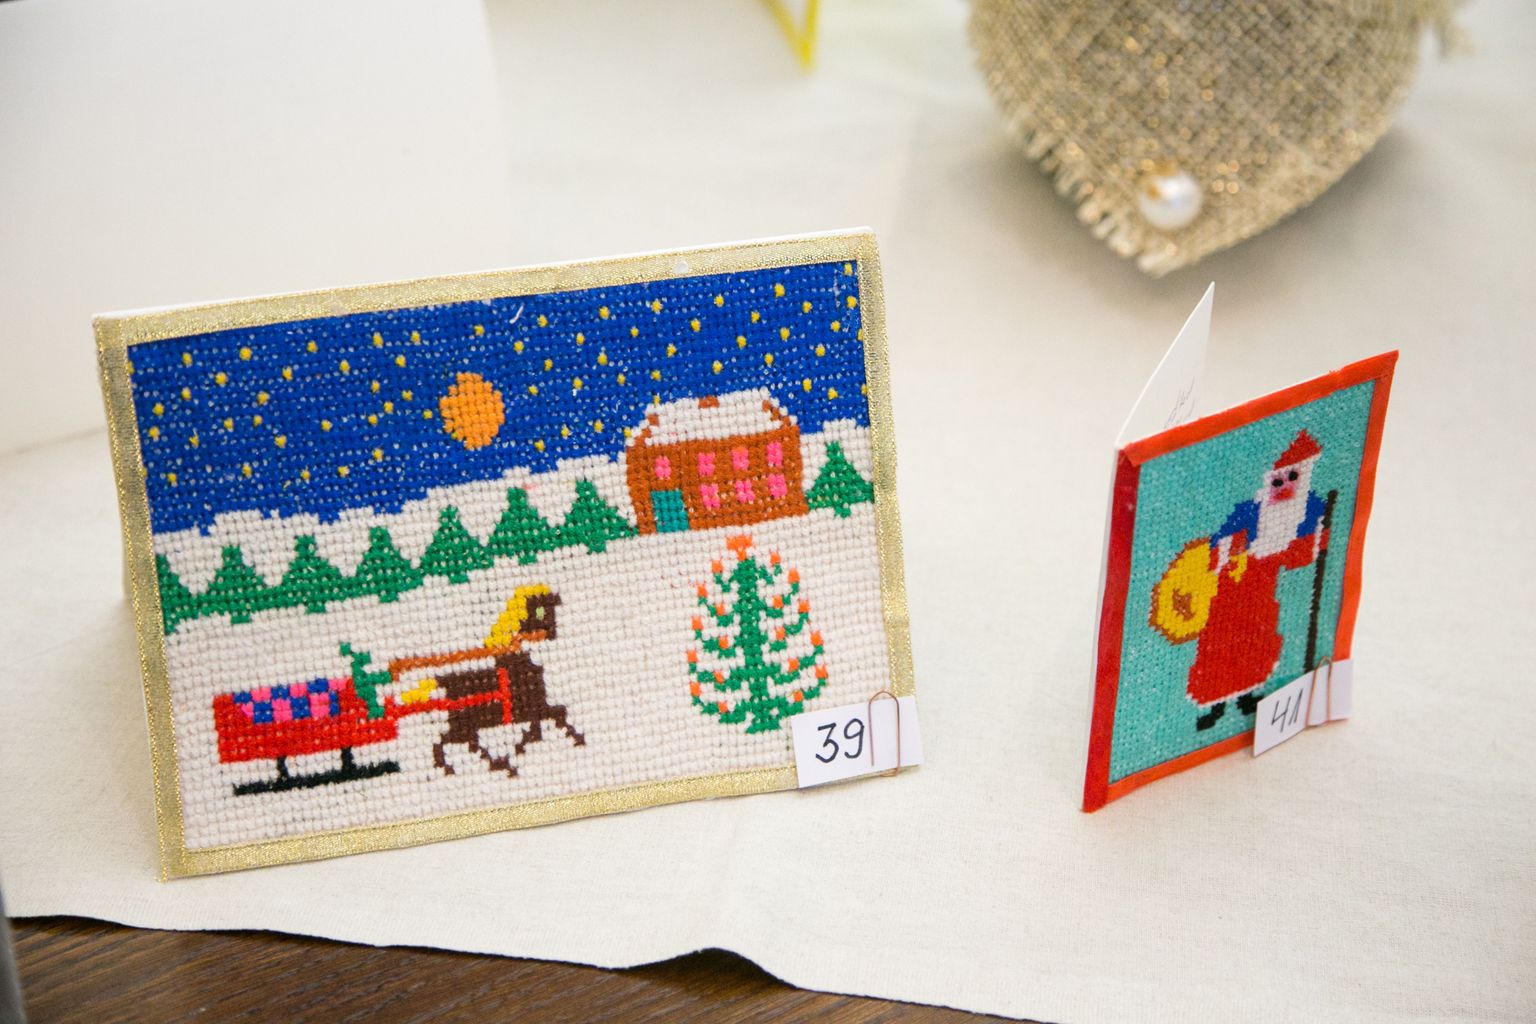 Kel pole mahti jõulukaarte otma minna, võib internetis enda valitud pildiga kaardi saata.